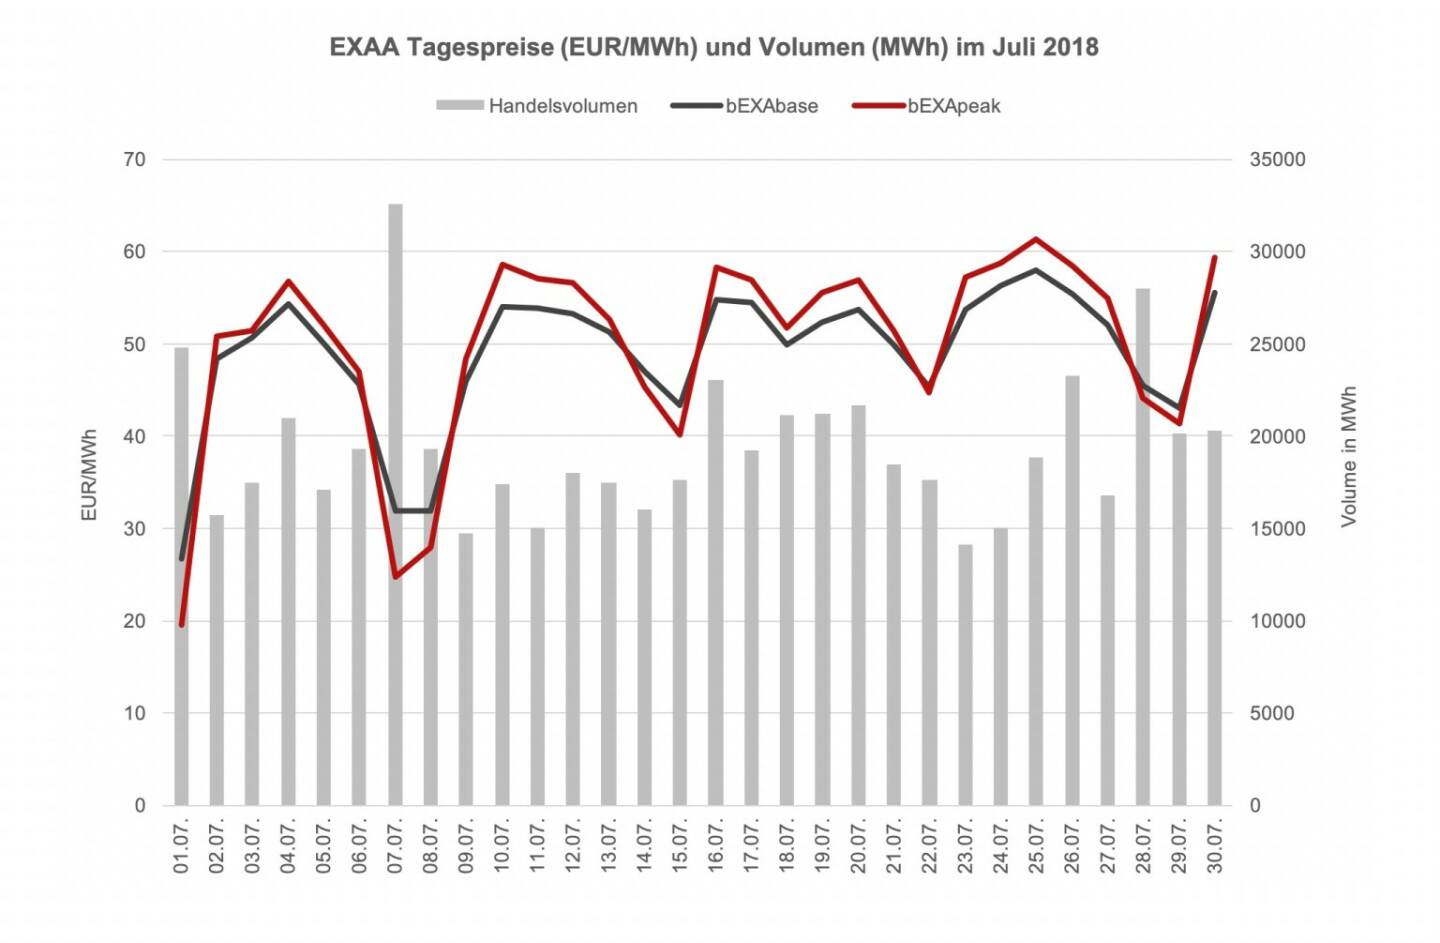 Im Vergleich zum Vorjahresmonat (601.426,63 MWh) ist das ein leichter Rückgang von ca. 0,2%. Year-to-date konnte jedoch ein Umsatzplus gegenüber dem Vorjahr erreicht werden – somit konnte EXAA in den ersten sieben  Monaten im Jahr 2018 ca. 1,2% mehr an Volumen clearen als in den ersten sieben Monaten des Vorjahres (Jänner – Juli 2018: 4622 GWh; Jänner – Juli 2017: 4569 GWh).